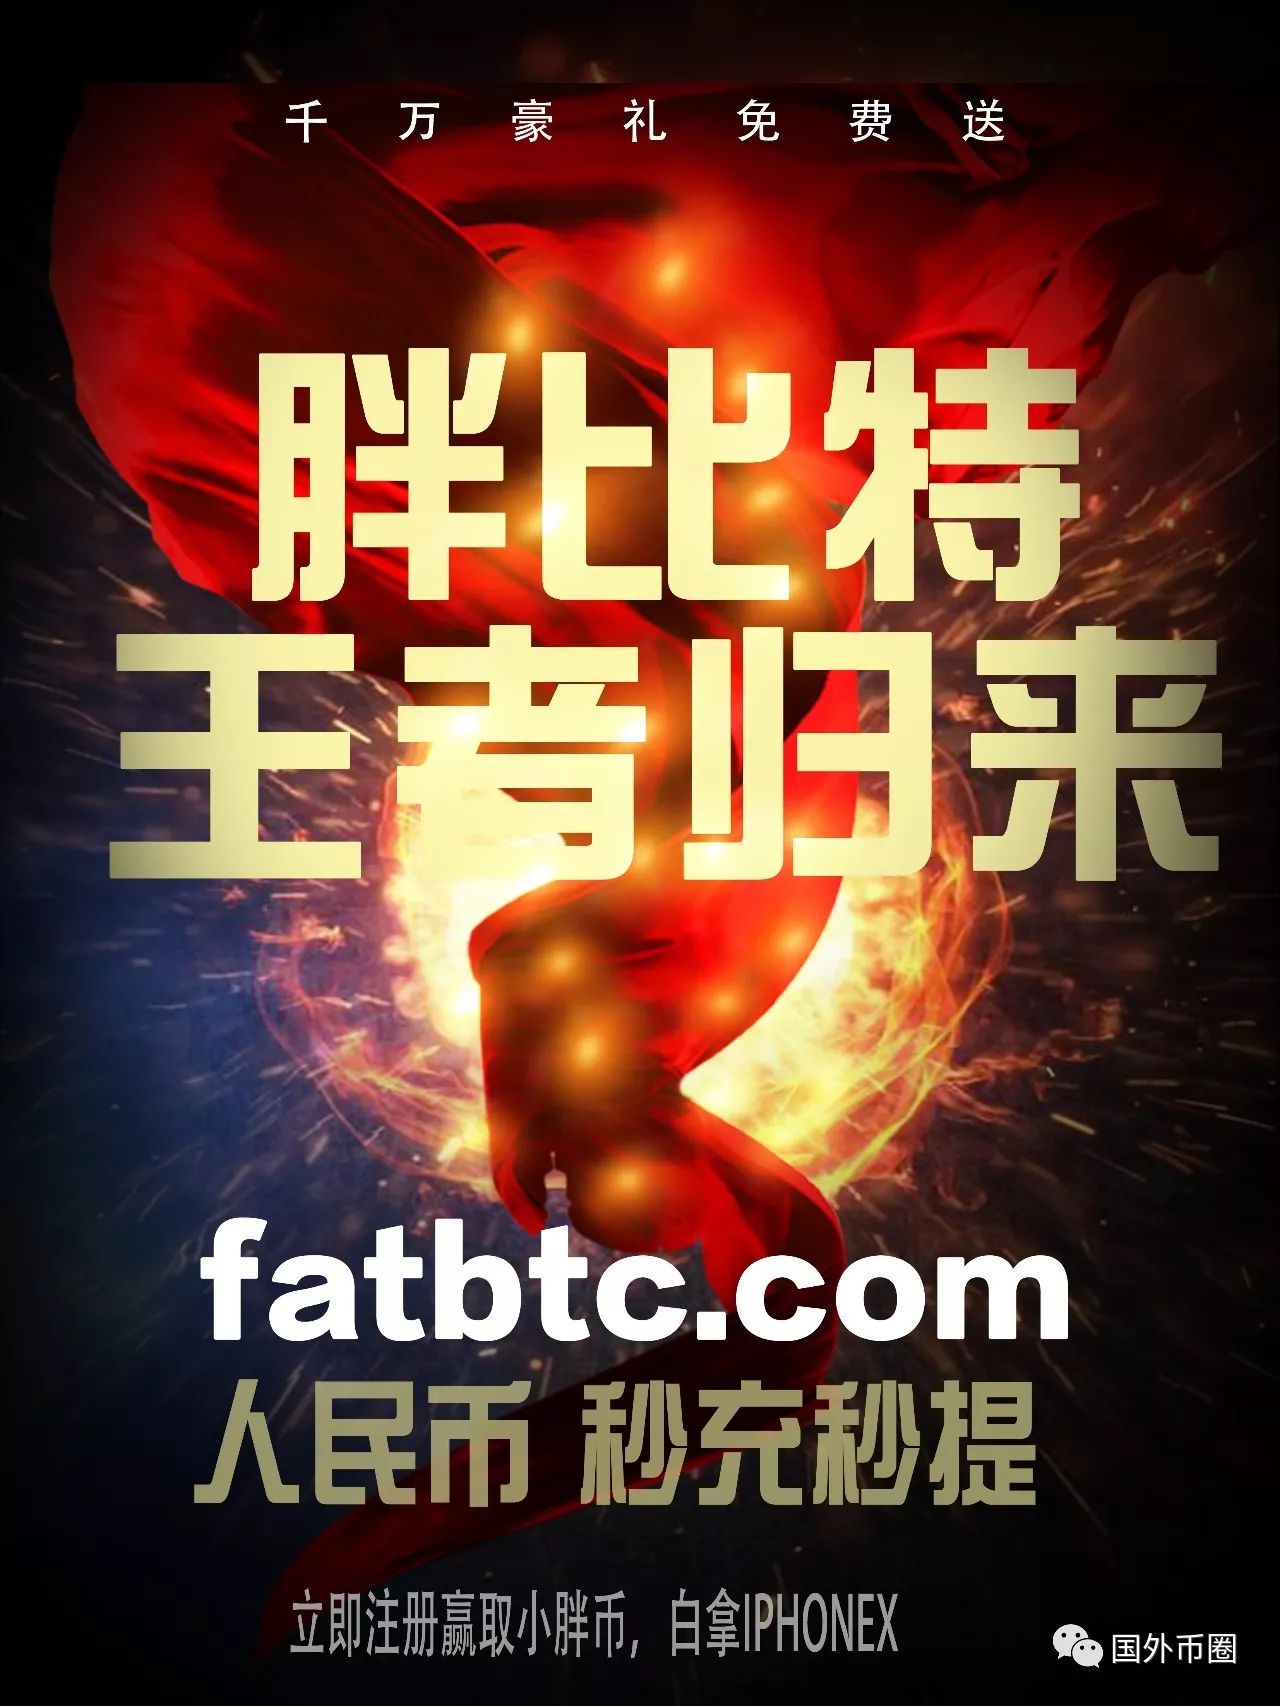 Fatbit fatbtc.com国际版开放注册及模拟交易大赛公告